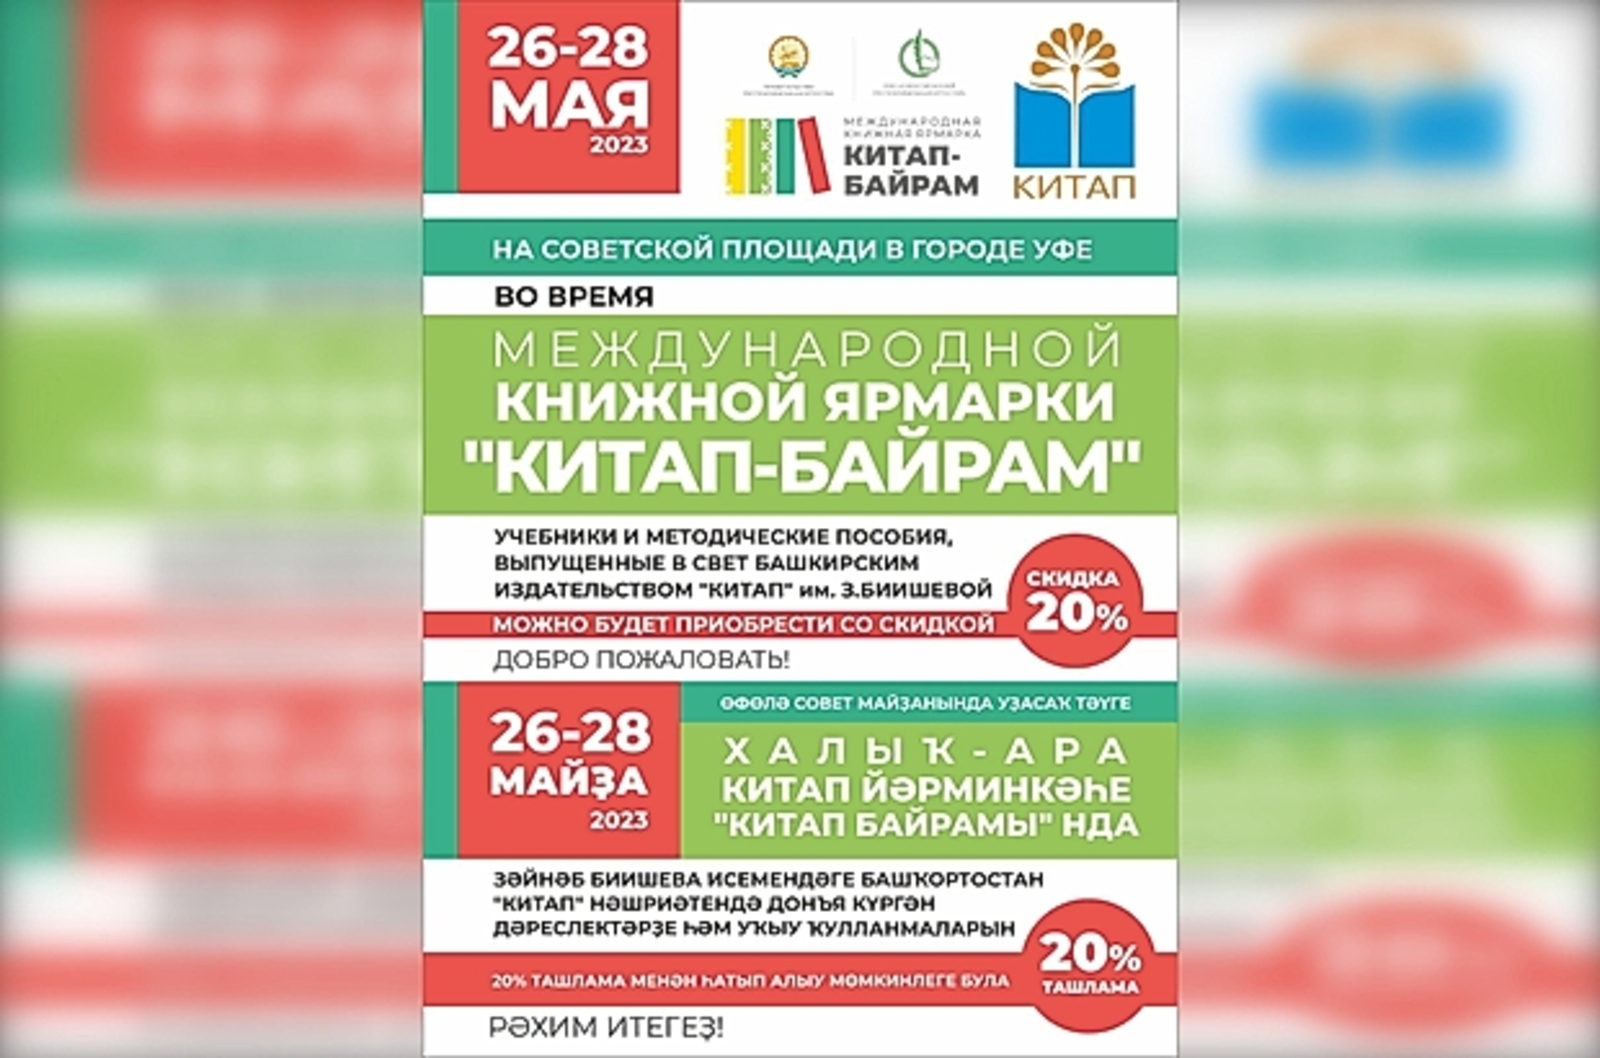 В Башкирии на Международной книжной ярмарке "Китап-байрам"  можно приобрести книги со скидкой